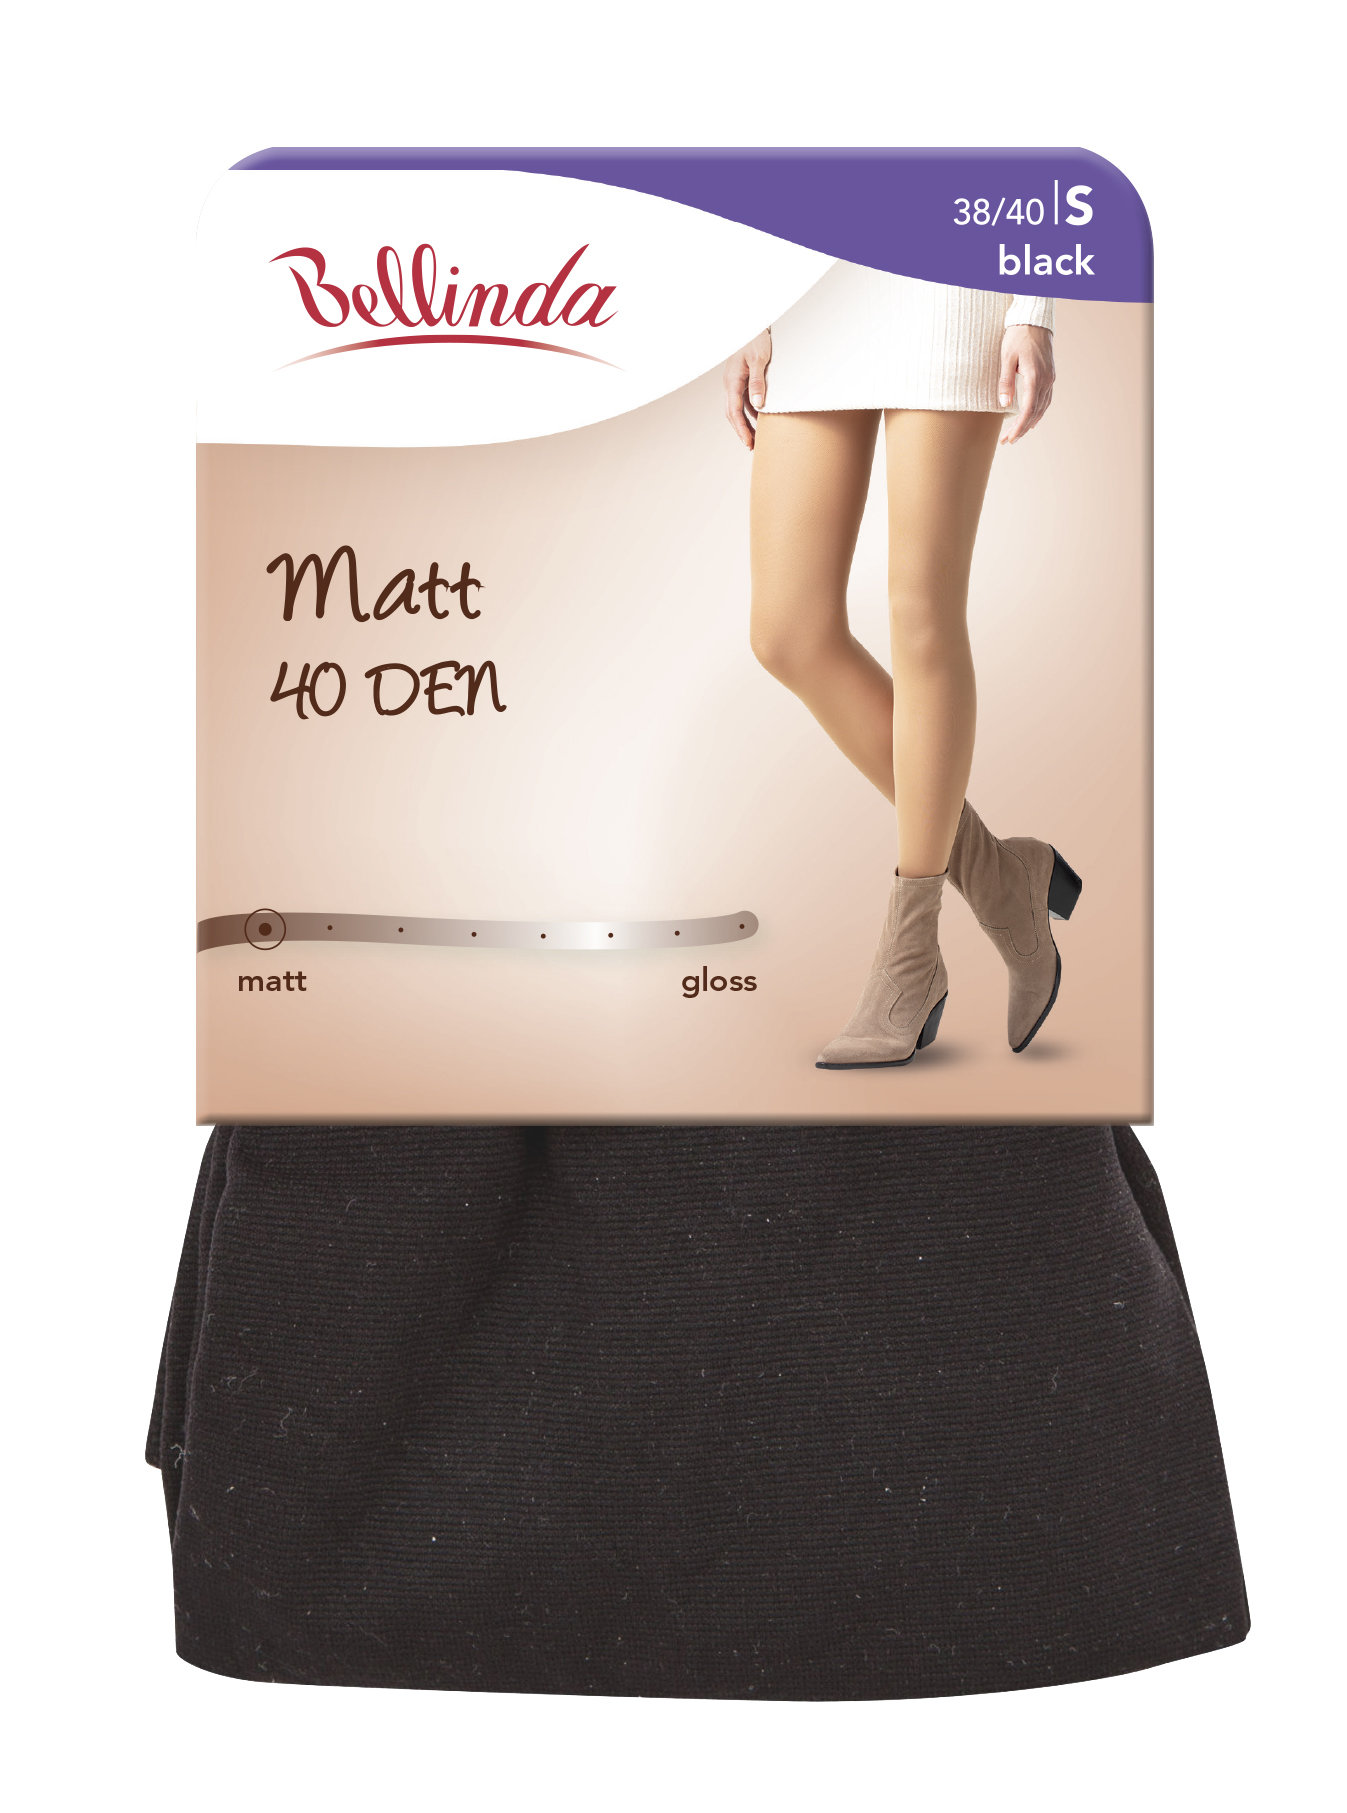 Punčochové kalhoty MATT 40 DEN - Dámské punčochové kalhoty - černá